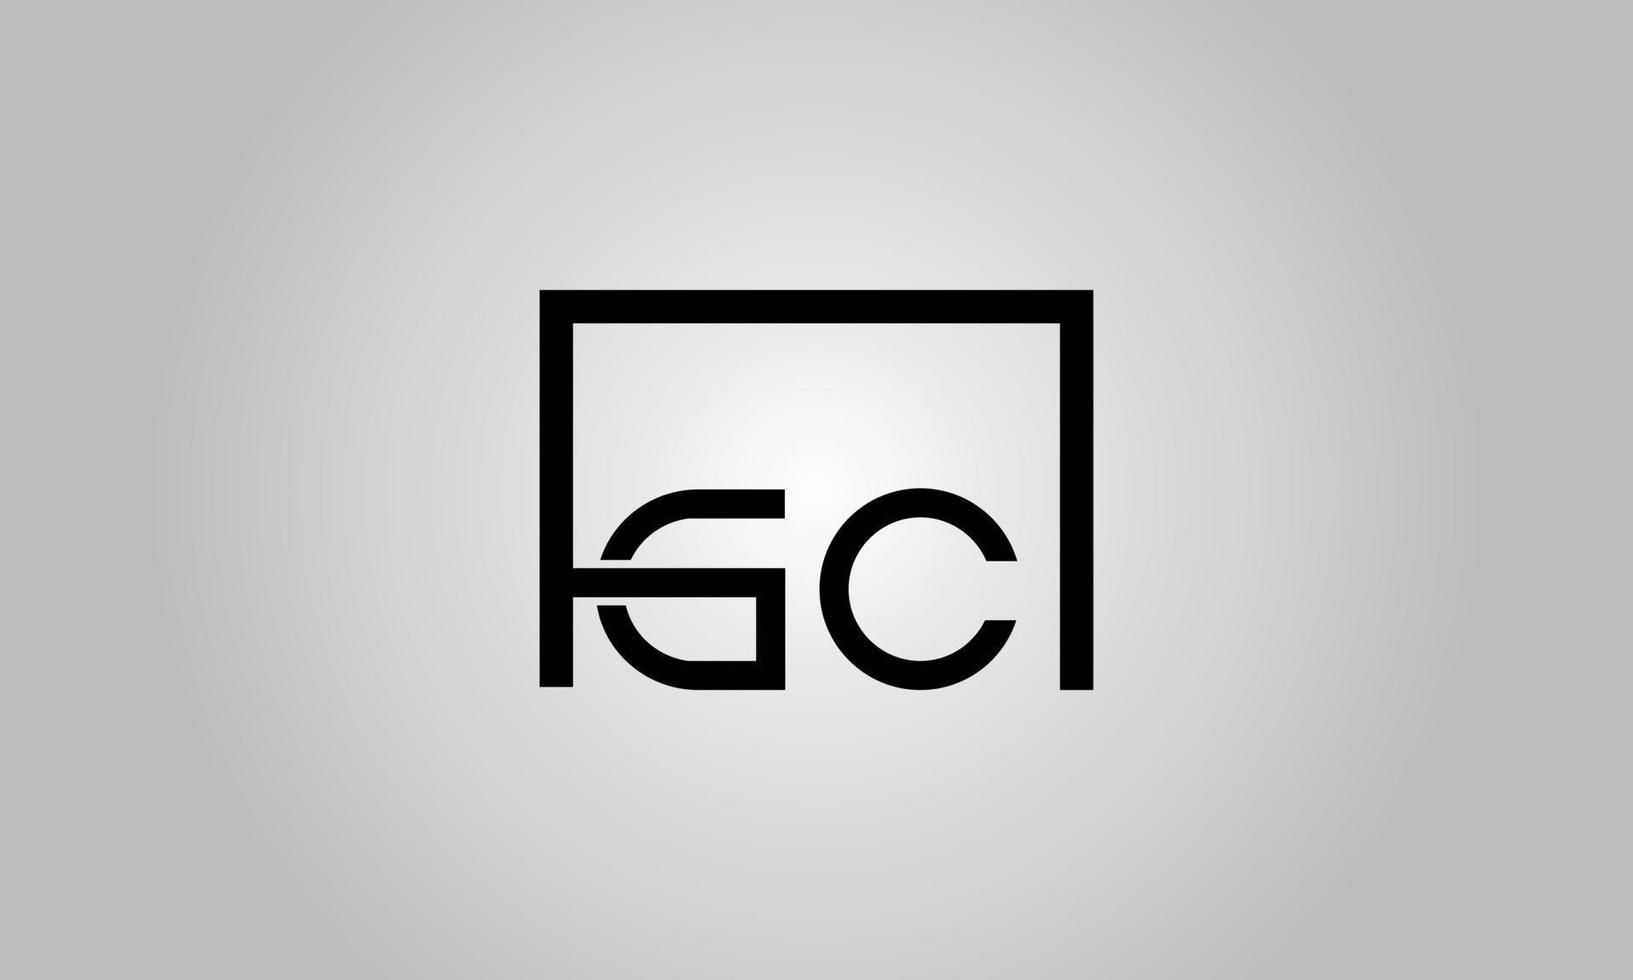 création de logo lettre gc. logo gc avec forme carrée dans le modèle vectoriel gratuit de couleurs noires.